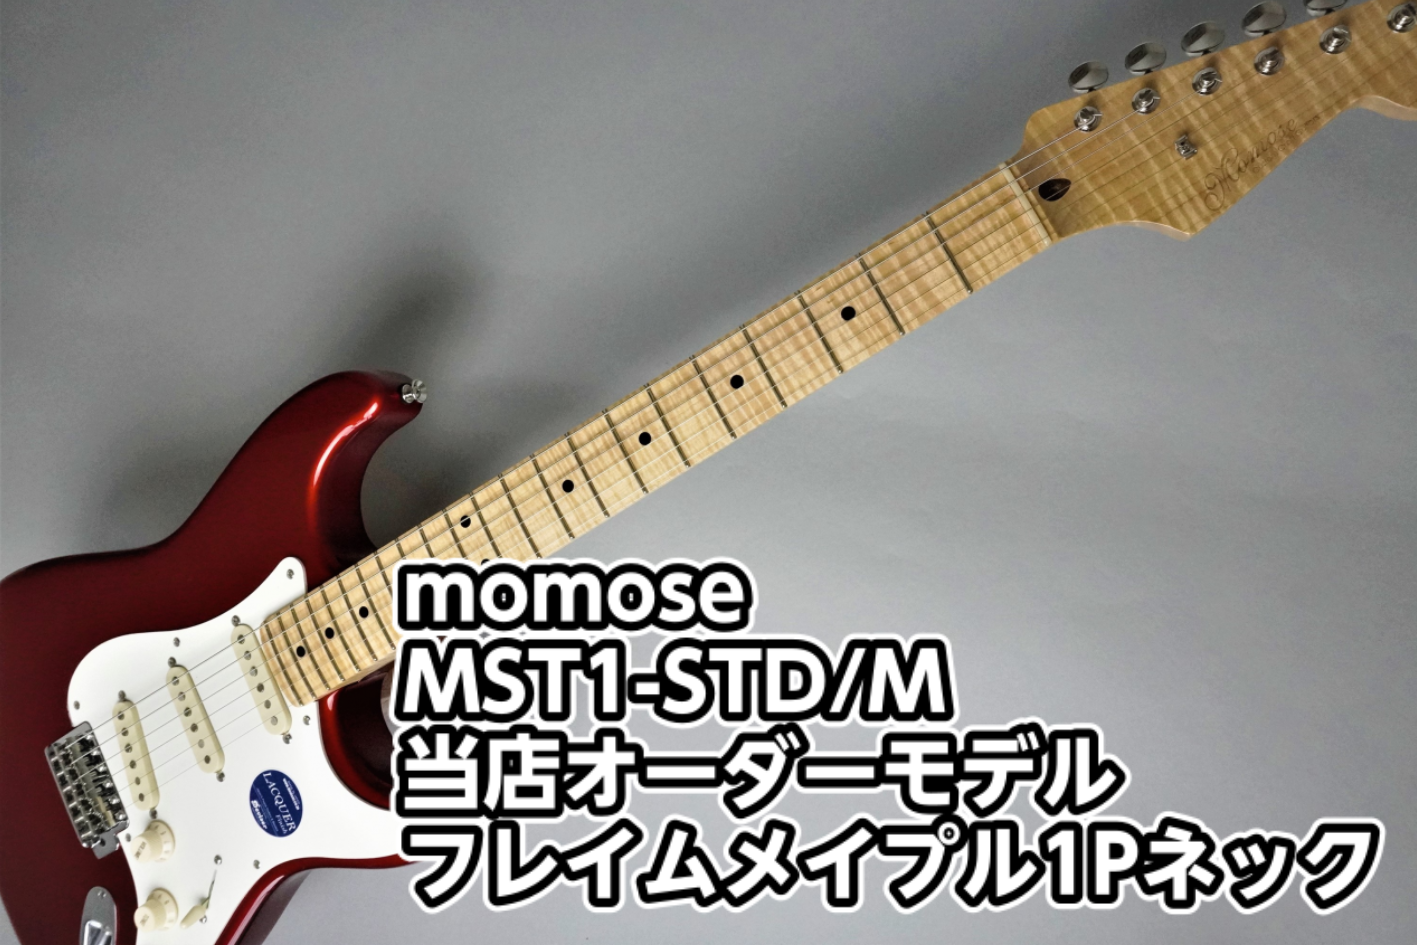 【エレキギター】momose (モモセ)MST1-STD/M/ 小倉店オーダーモデル【フレイムメイプル1Pネック】入荷のご案内